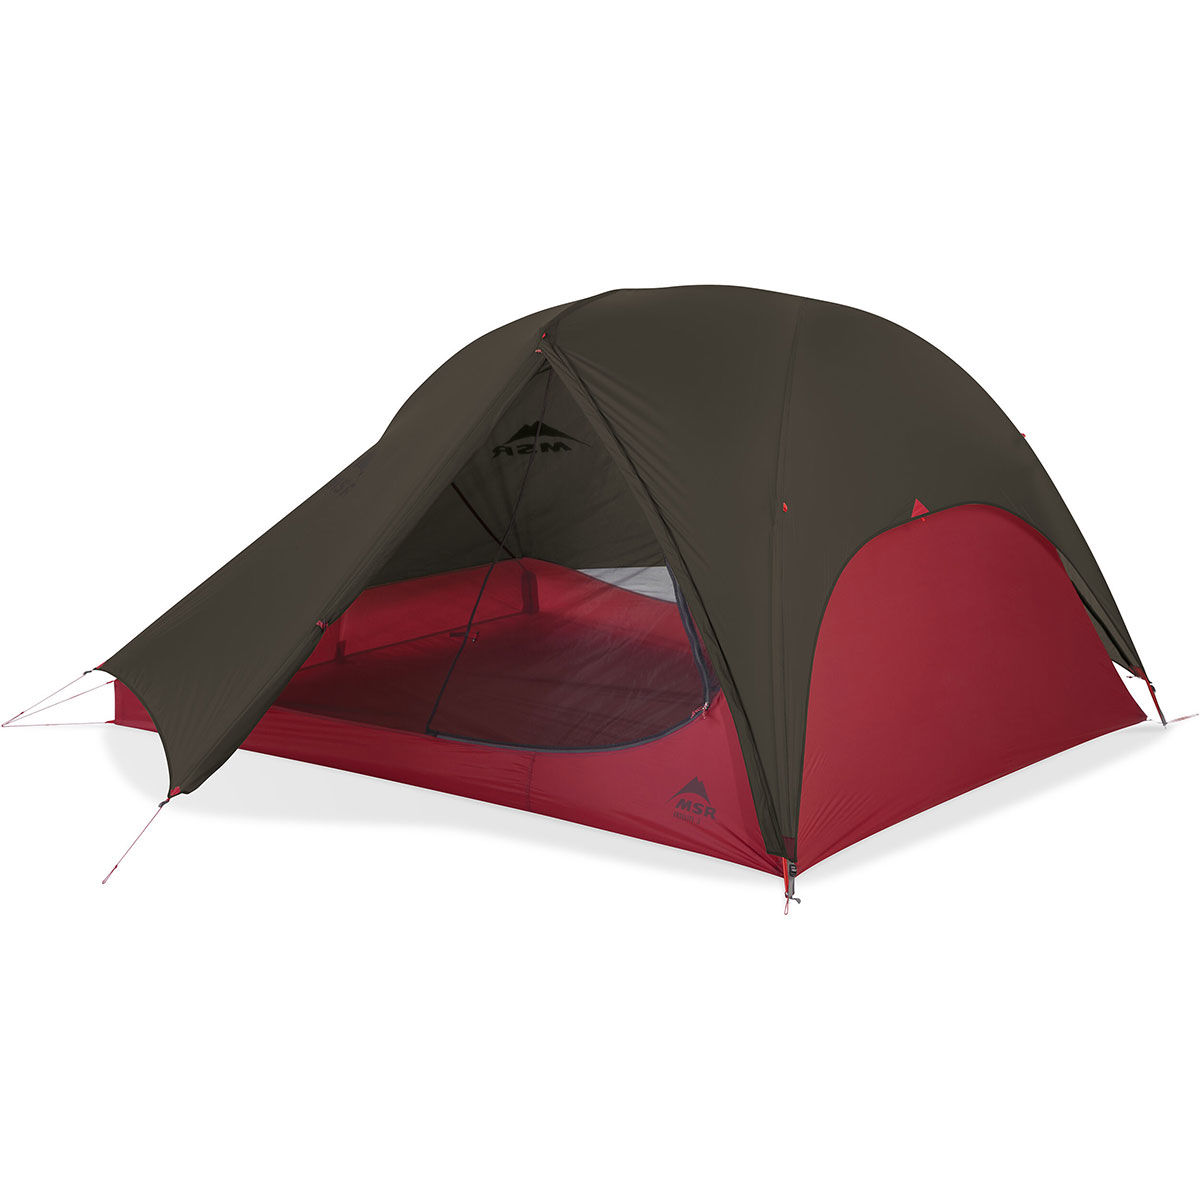 MSR FreeLite 3 backpacking tent - 3 people